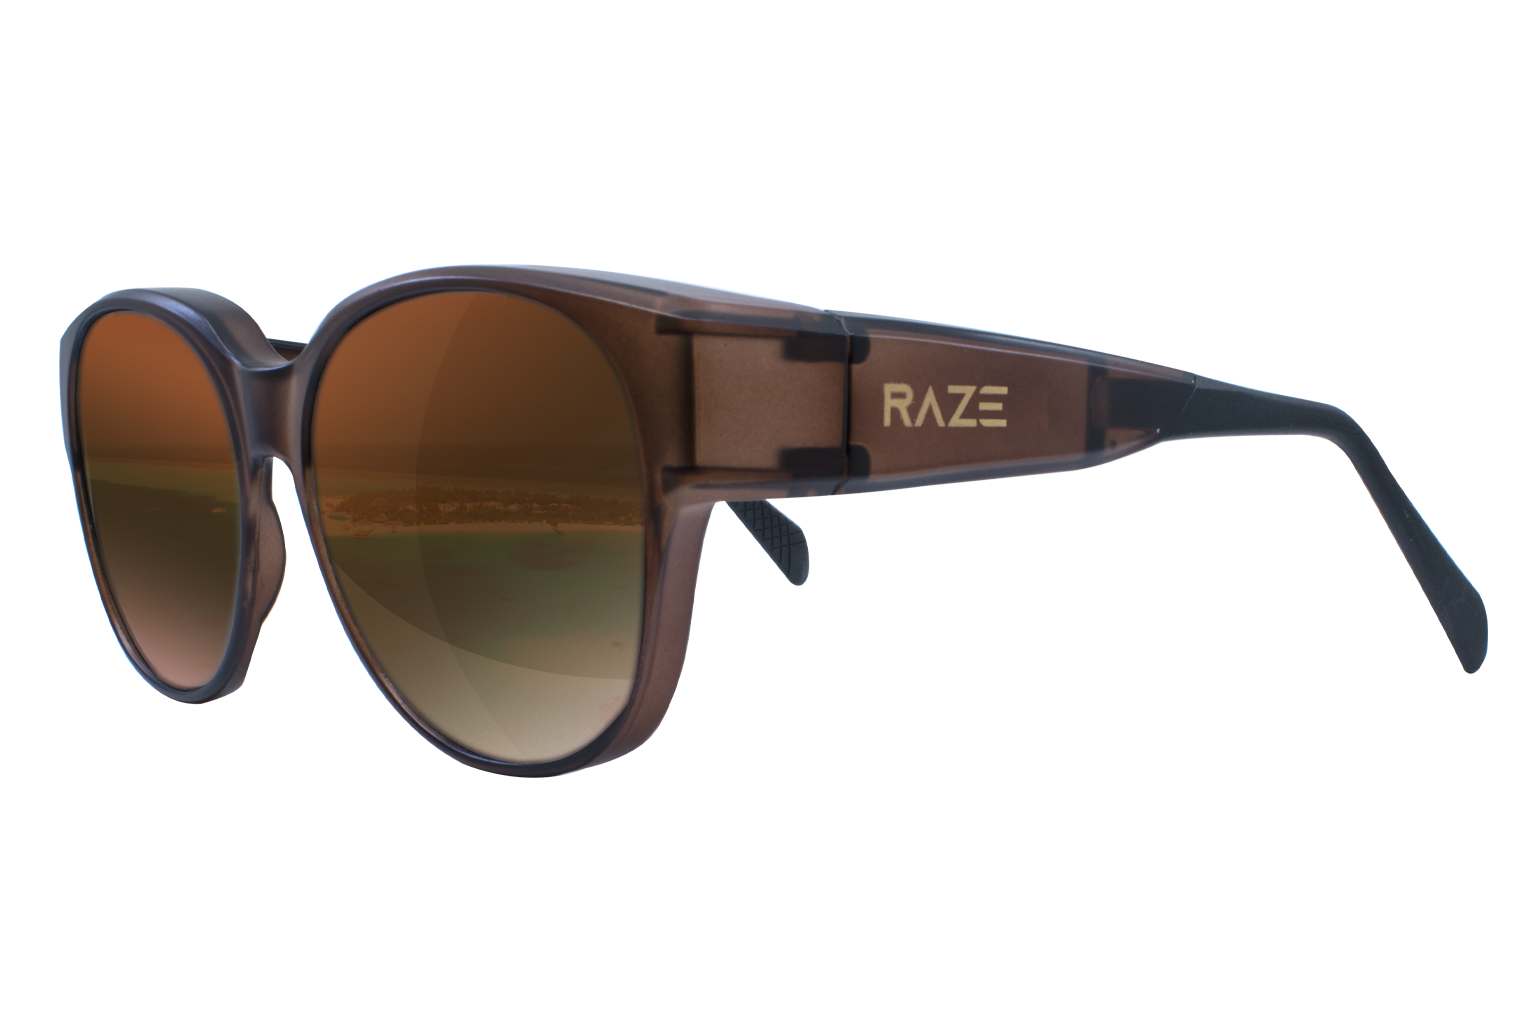 RAZE OTG Fashion (Over The Glasses)